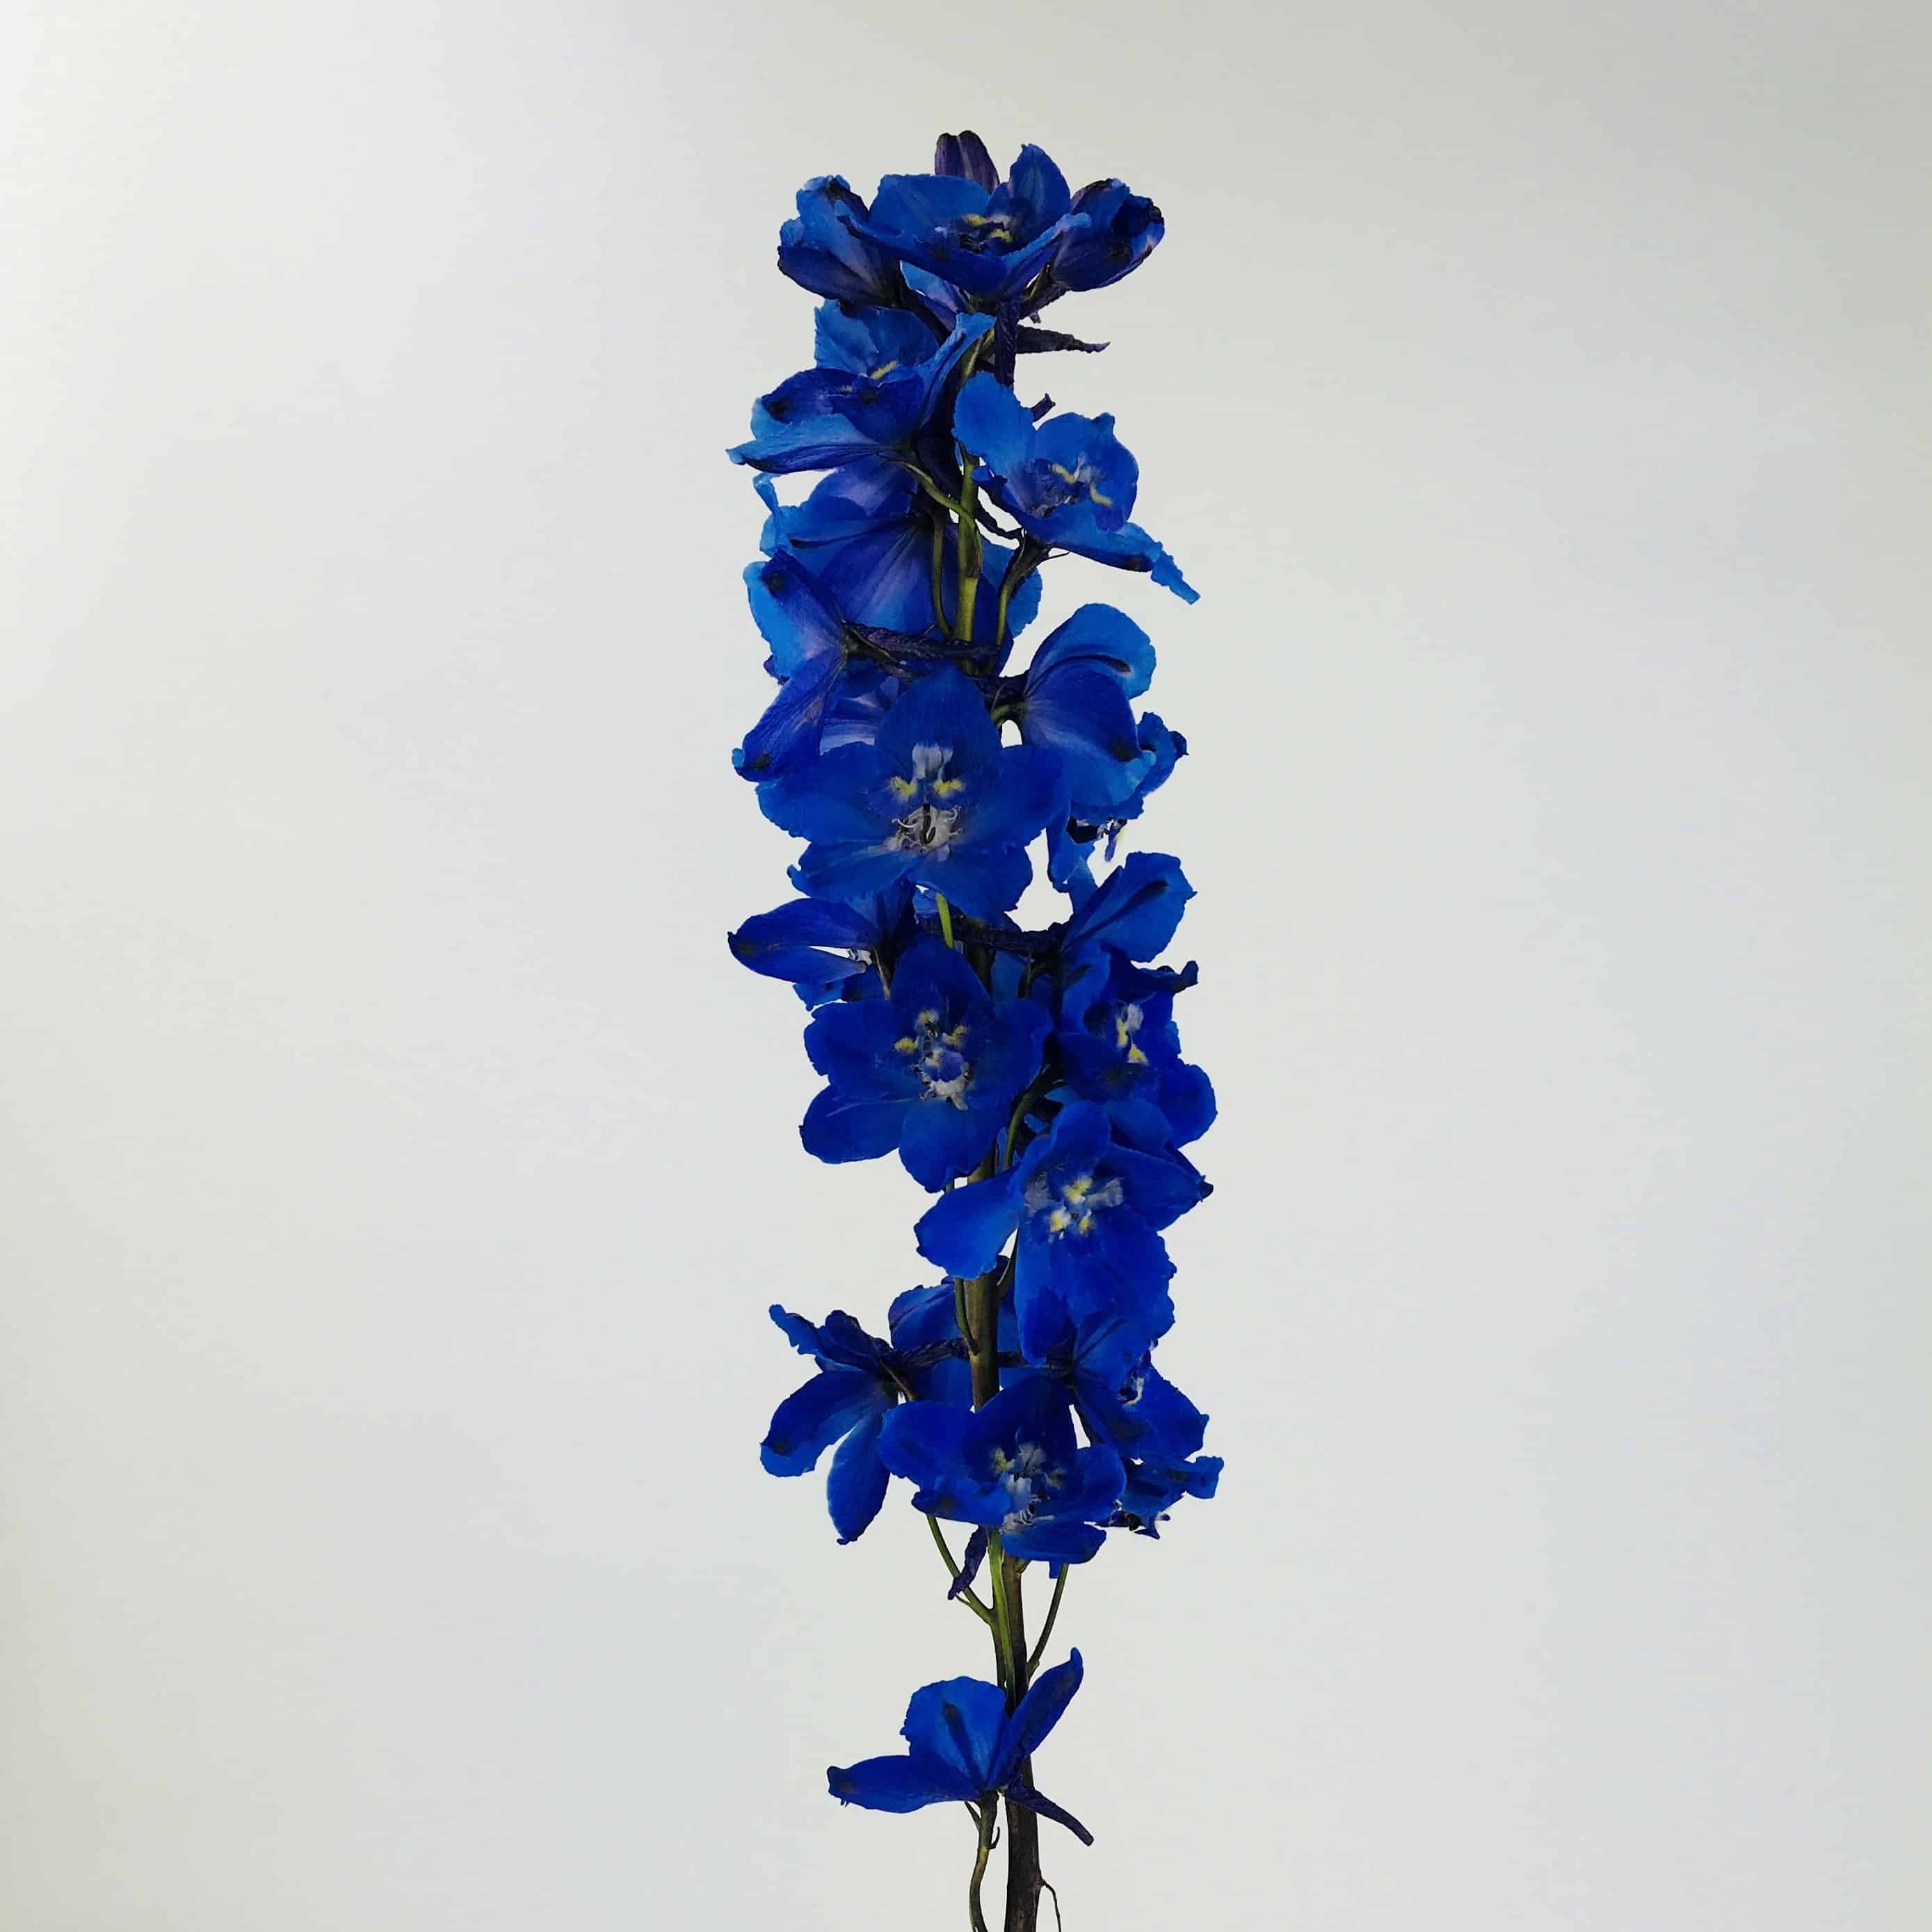 Image of Delphinium blue flower